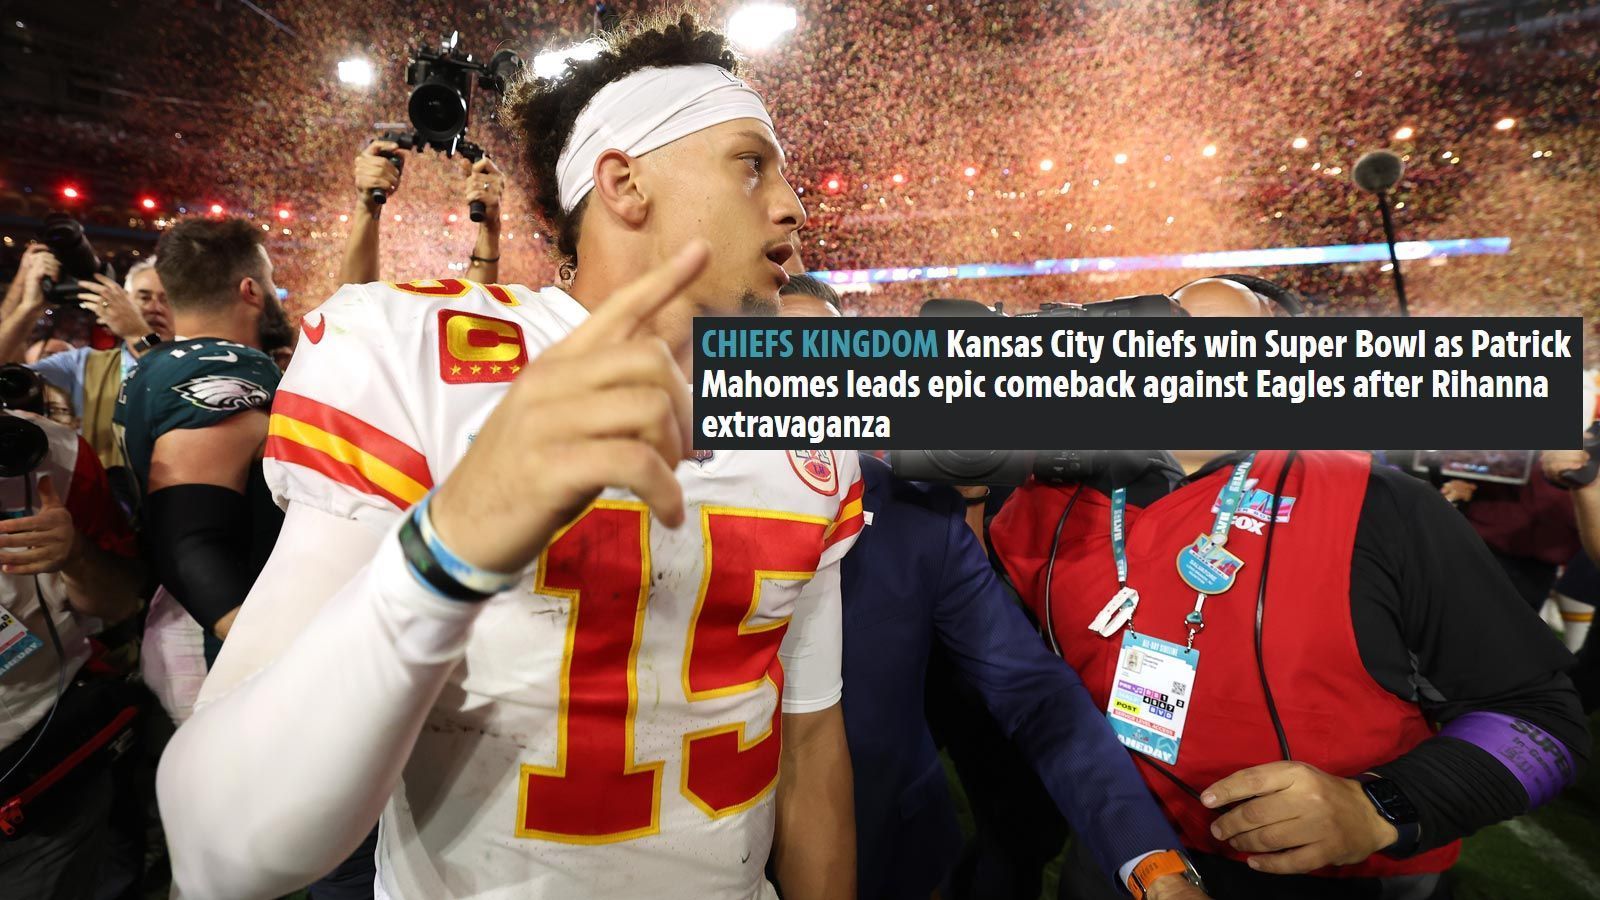 
                <strong>The Sun (England)</strong><br>
                "Die Kansas City Chiefs gewinnen den Super Bowl! Nach einer großen Show von Rihanna führt Patrick Mahomes ein episches Comeback an." 
              